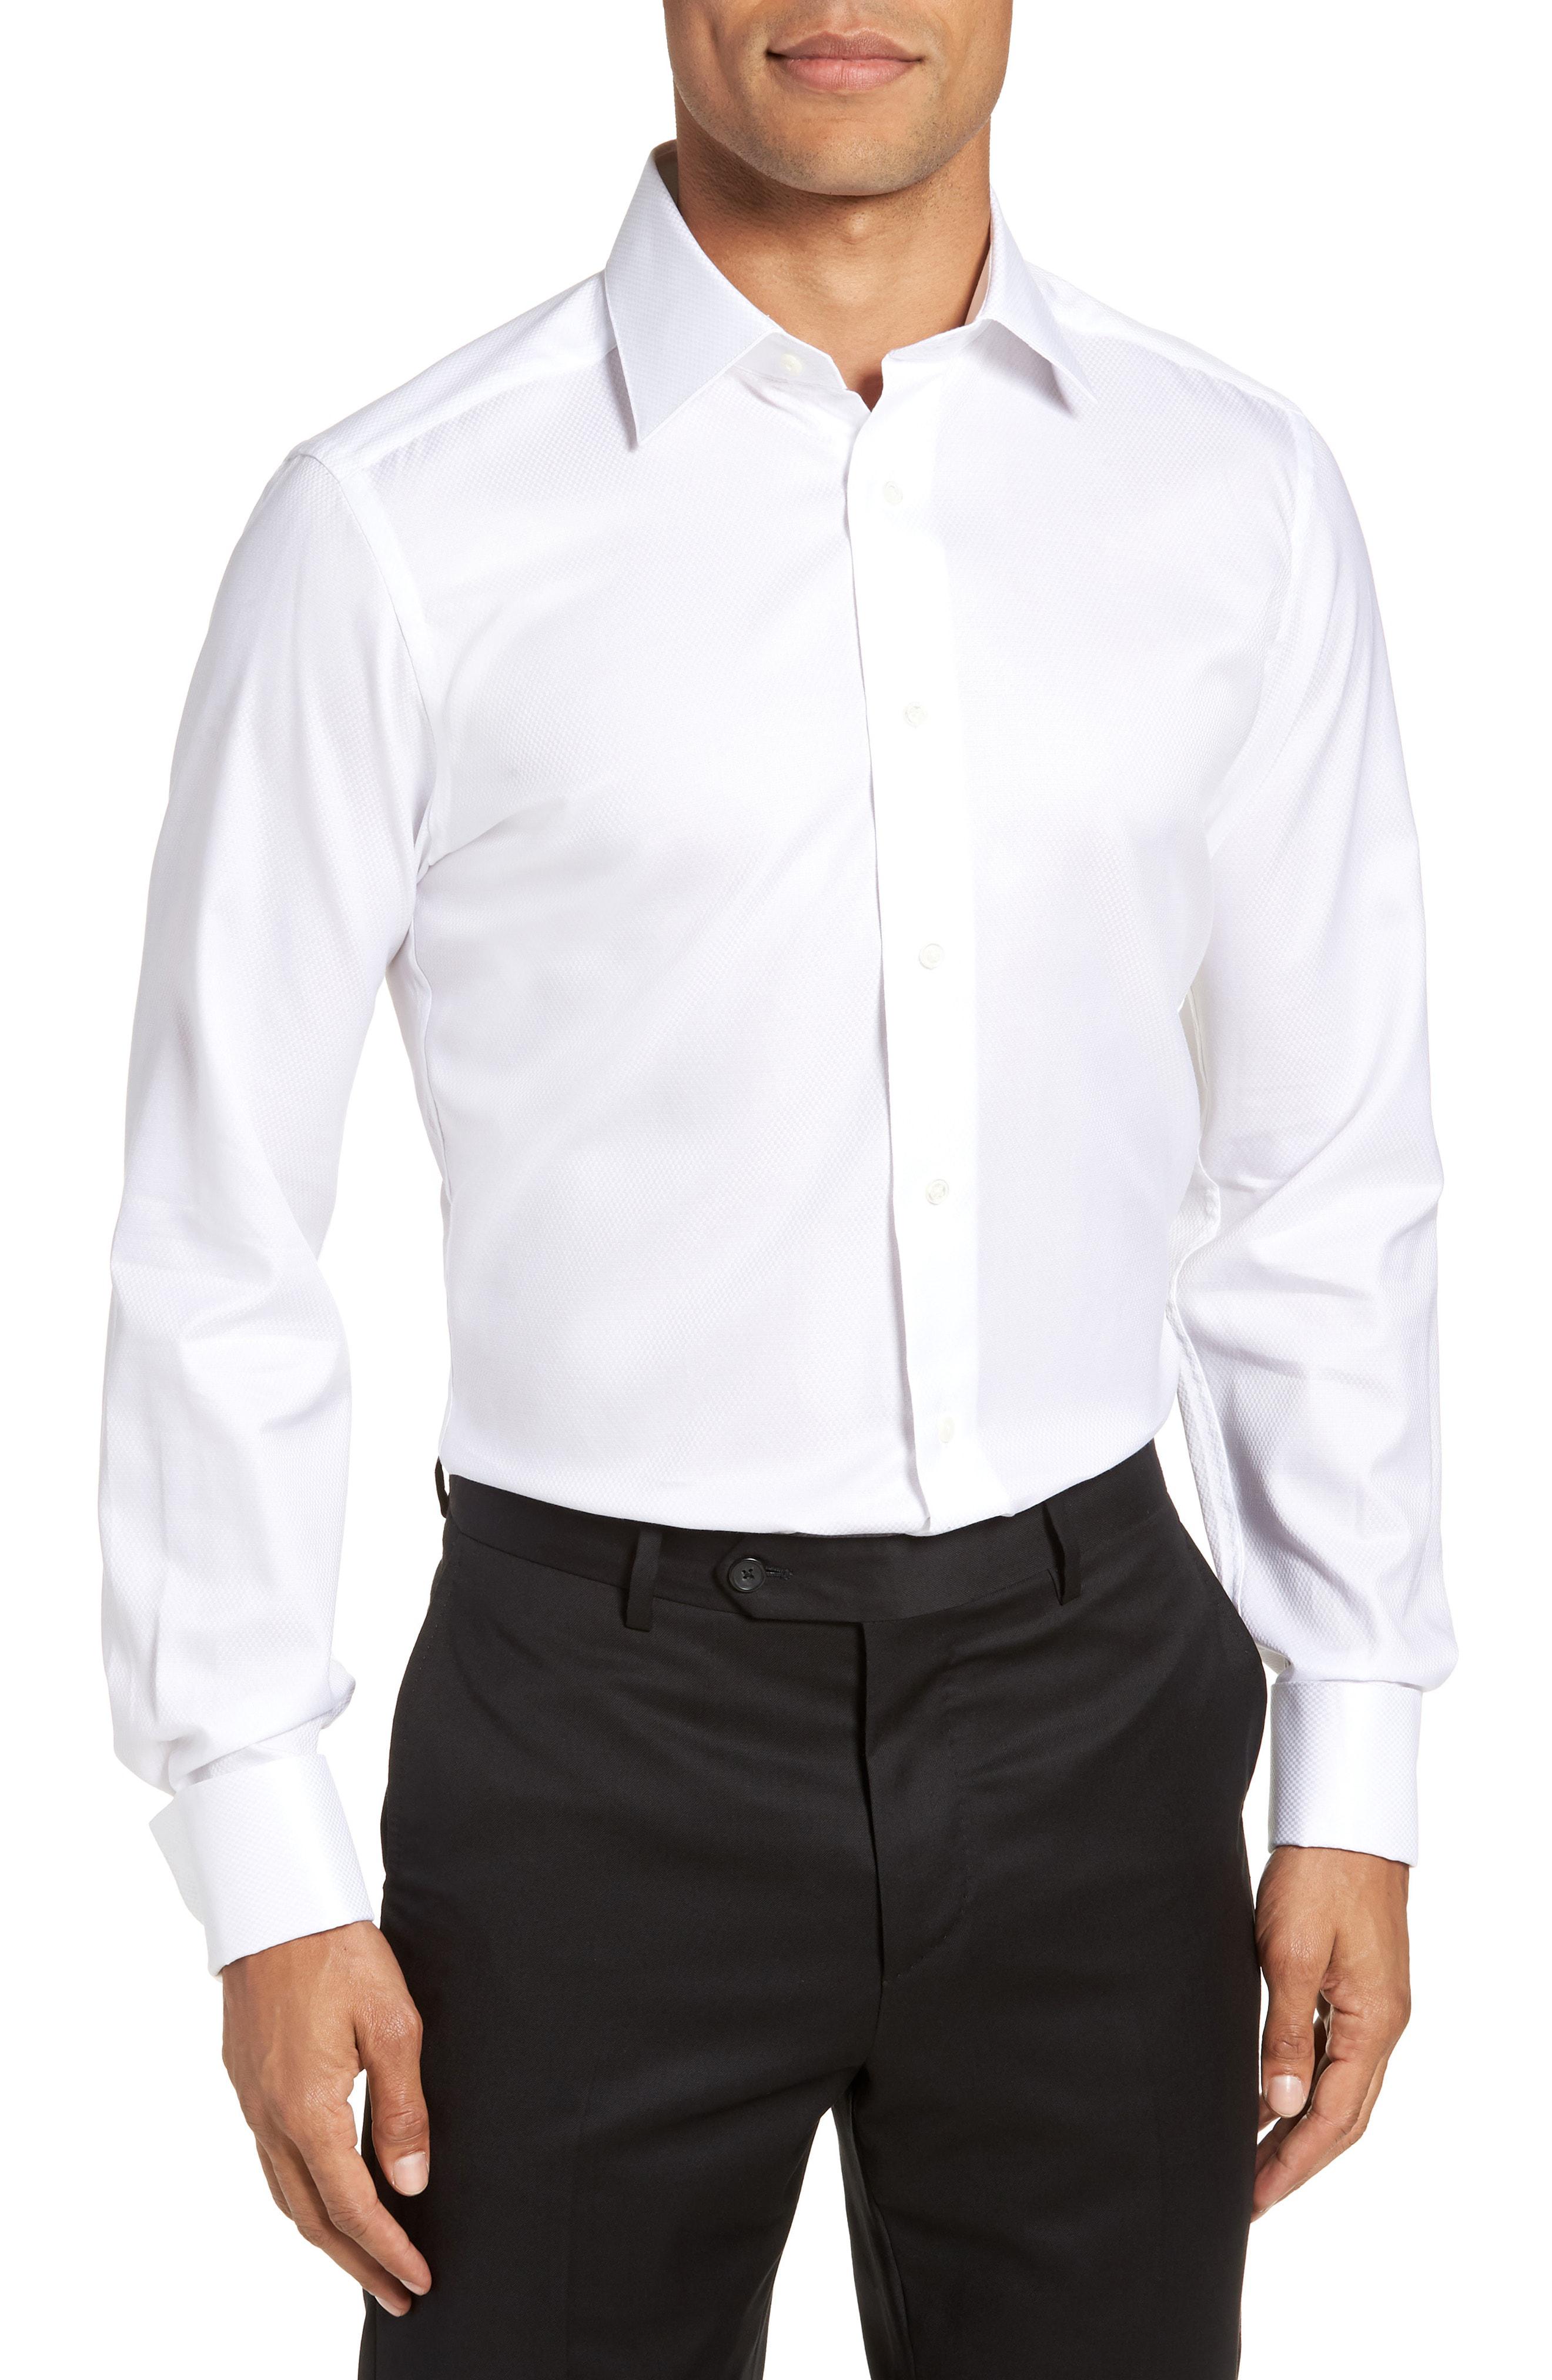 Lyst - David Donahue Horizontal Twill Regular Fit Tuxedo Shirt in White ...